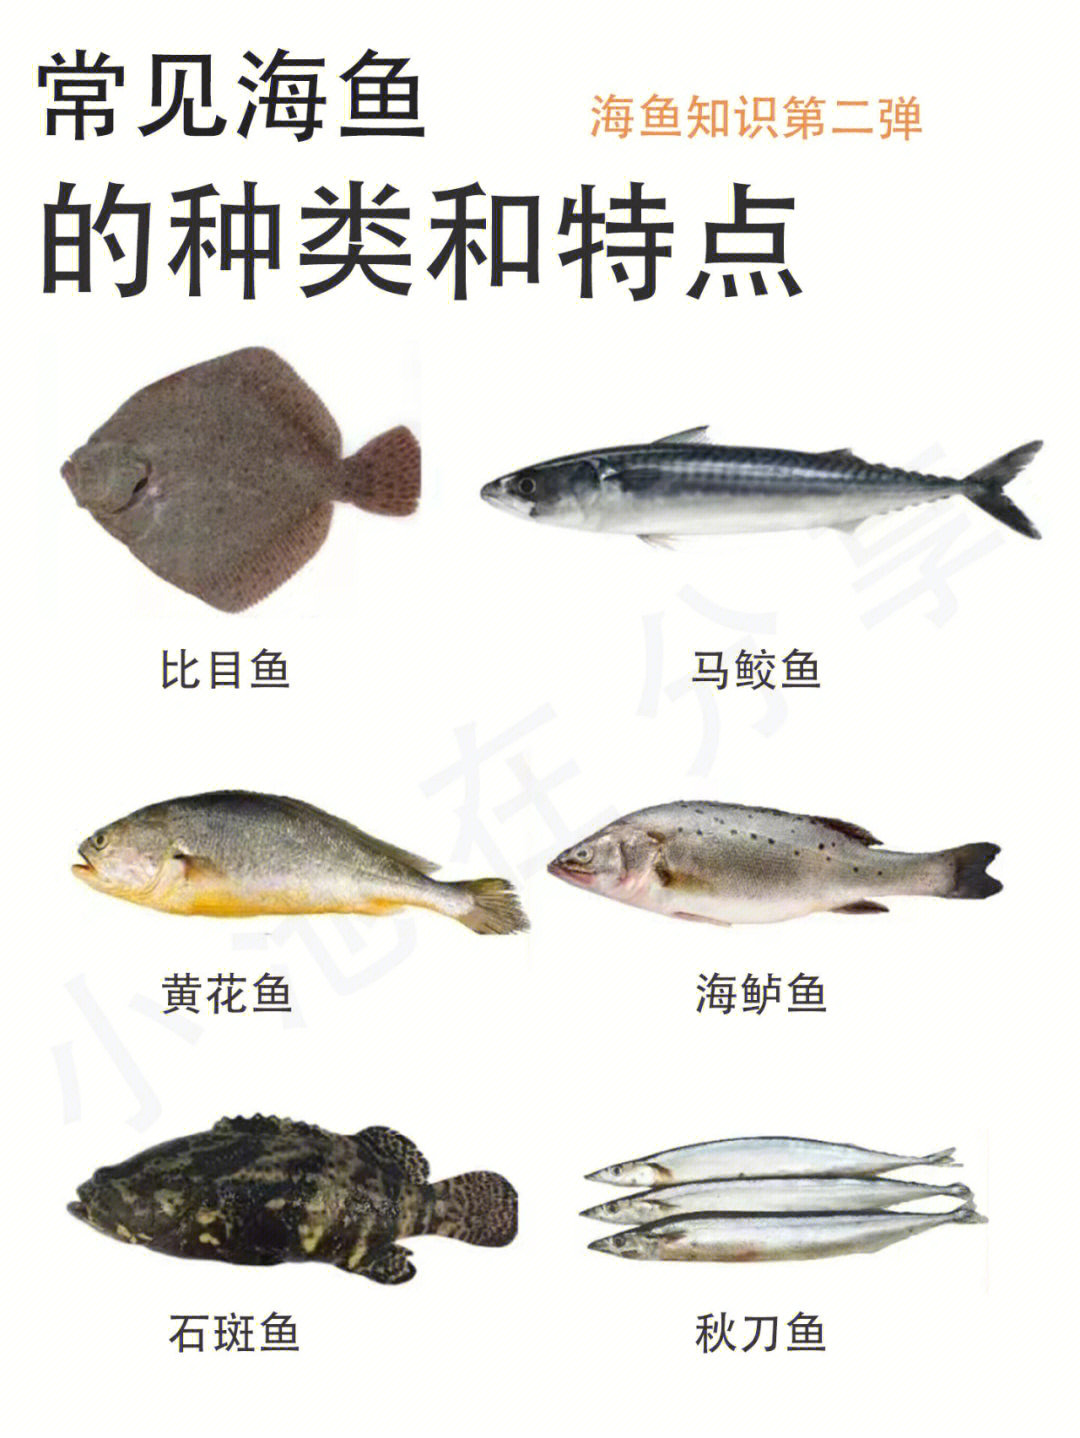 常见海鱼的种类和特点第二期